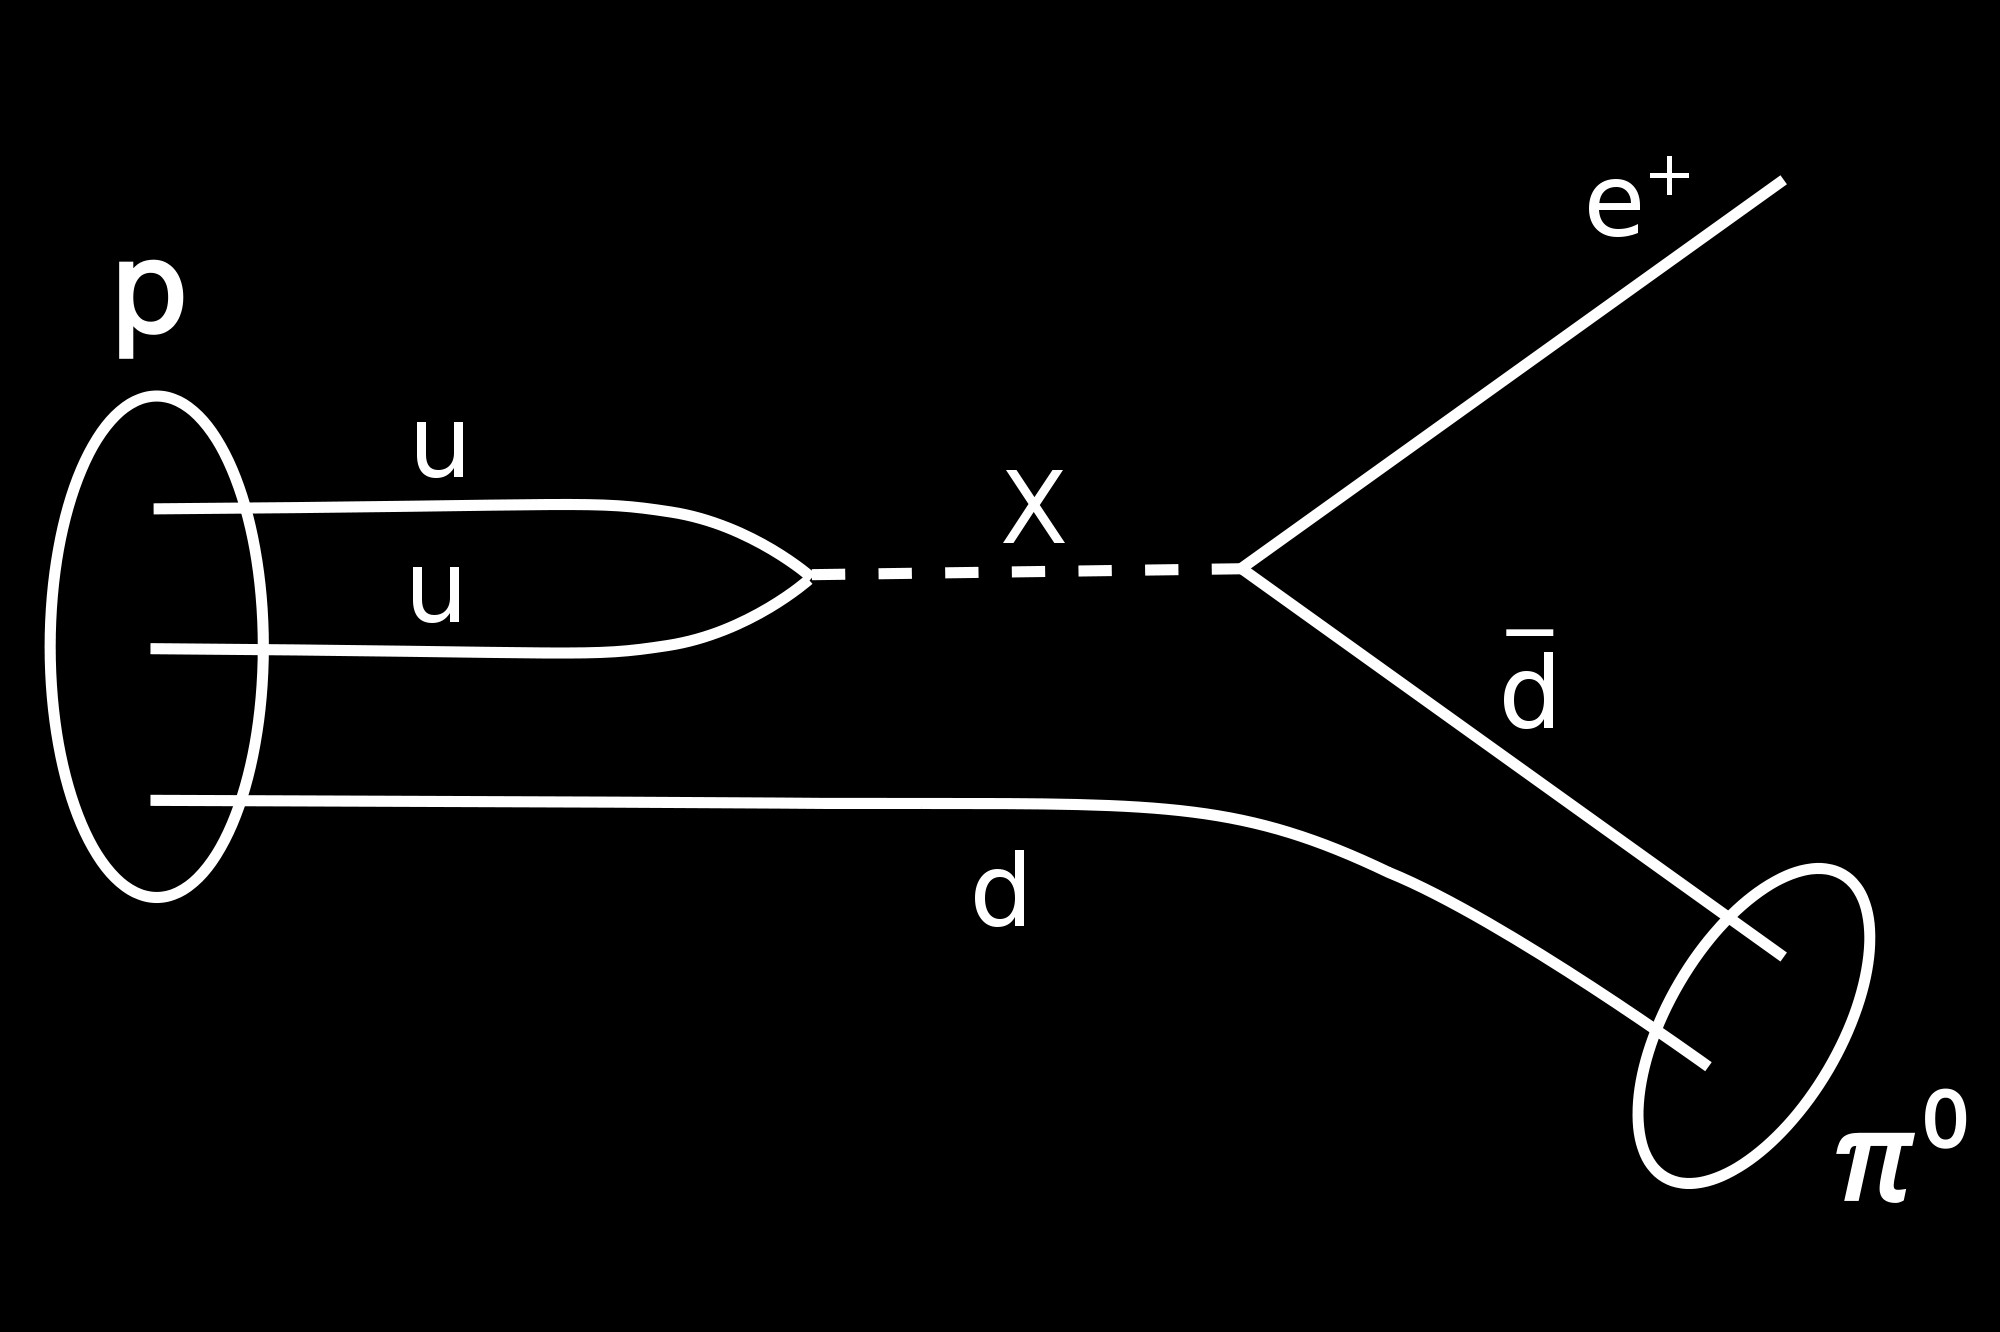 Feynmanin graafien avulla protonin hajoaminen näyfää seuraavalta: Protonin hajoamista ei ole havaifu, ja